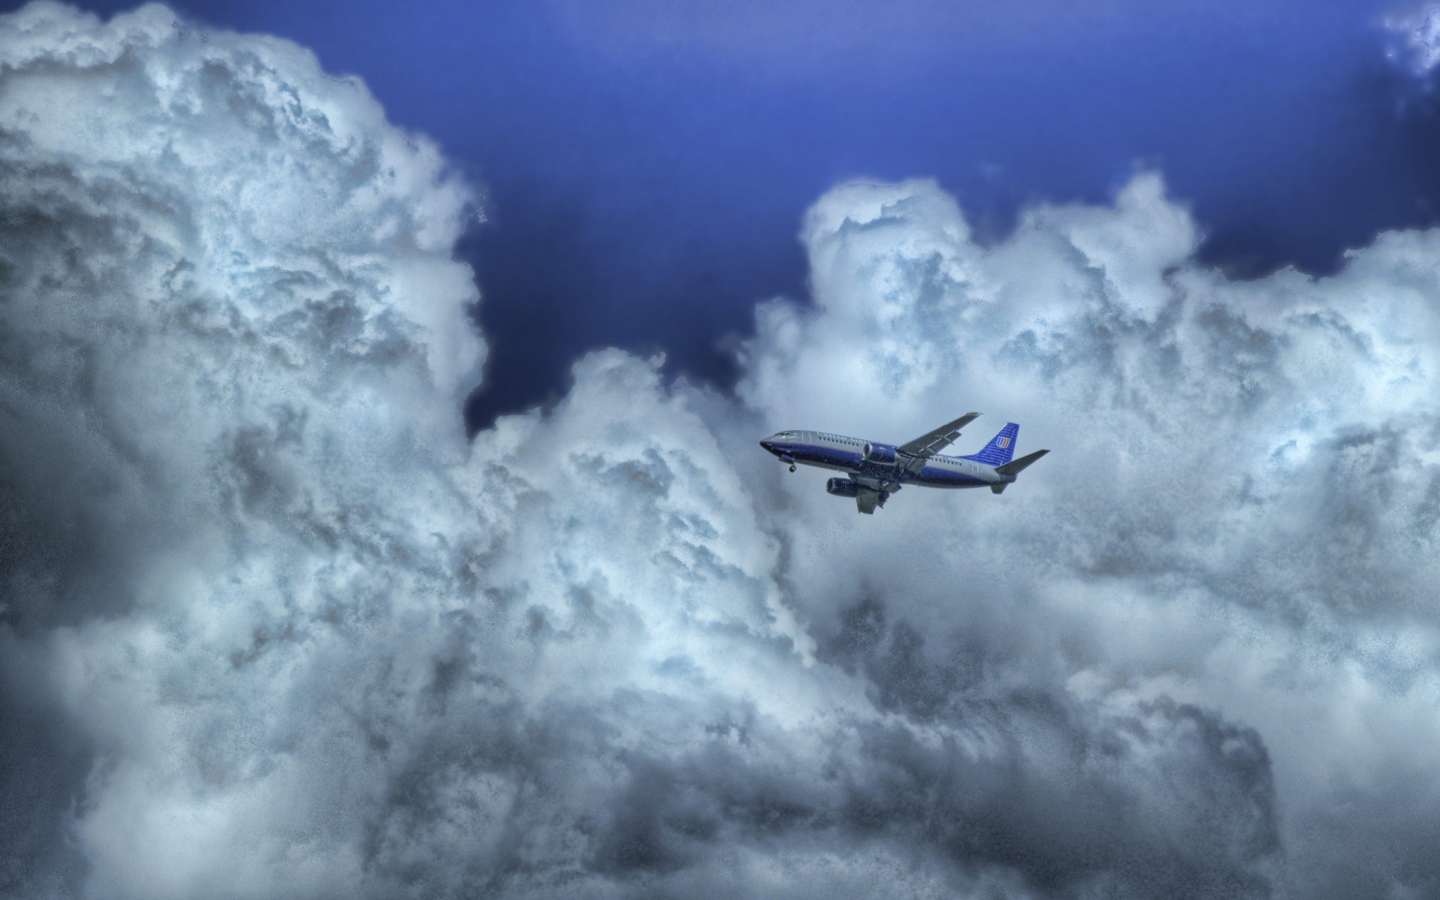 Обои Airplane In Clouds 1440x900